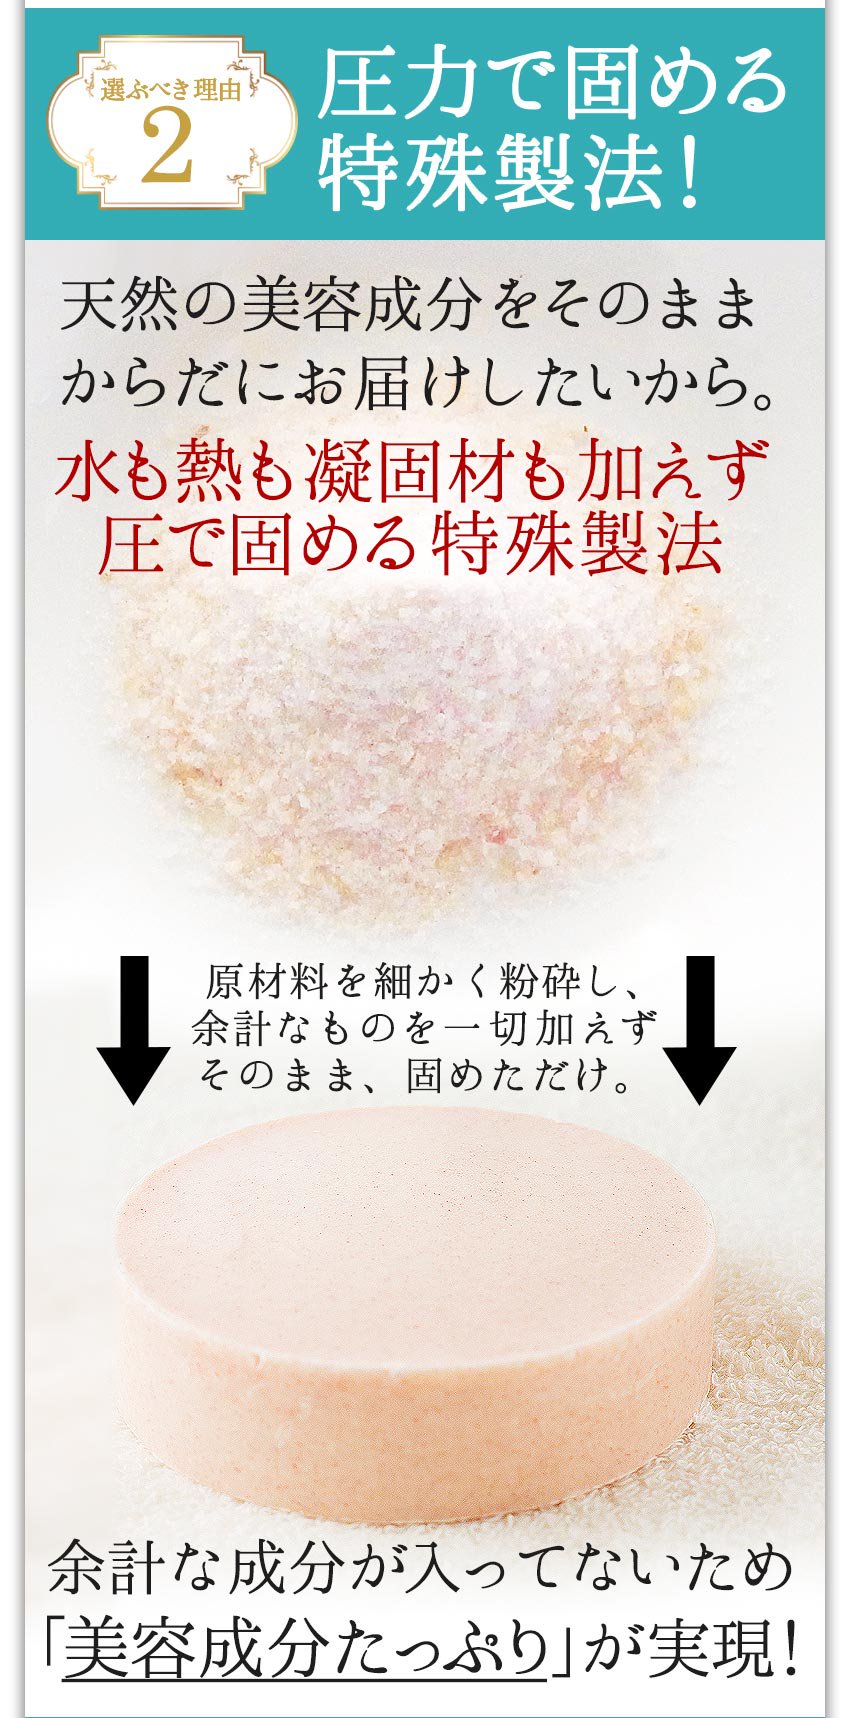 米ぬか塩石けん ミネラル 美白 シミ シワ ニキビ アトピー 乾燥肌